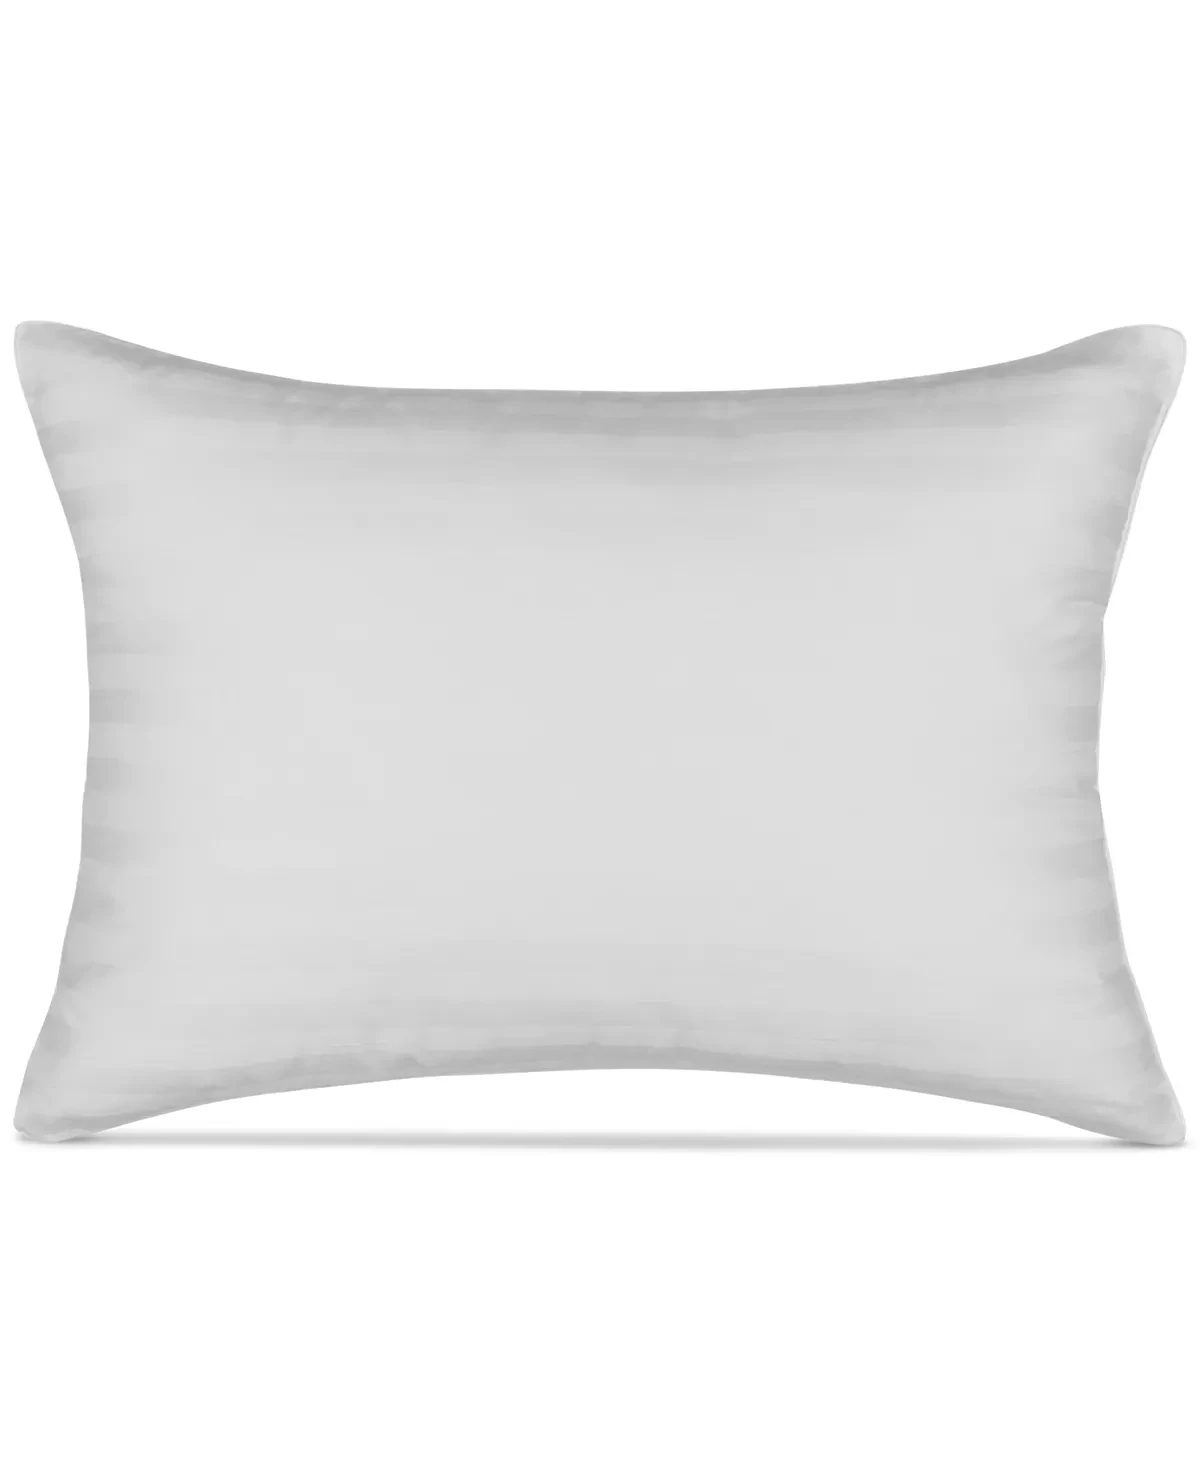 Martha Stewart Collection Allergy Wise Soft Density Dobby Stripe Pillow, Standard/Queen, White